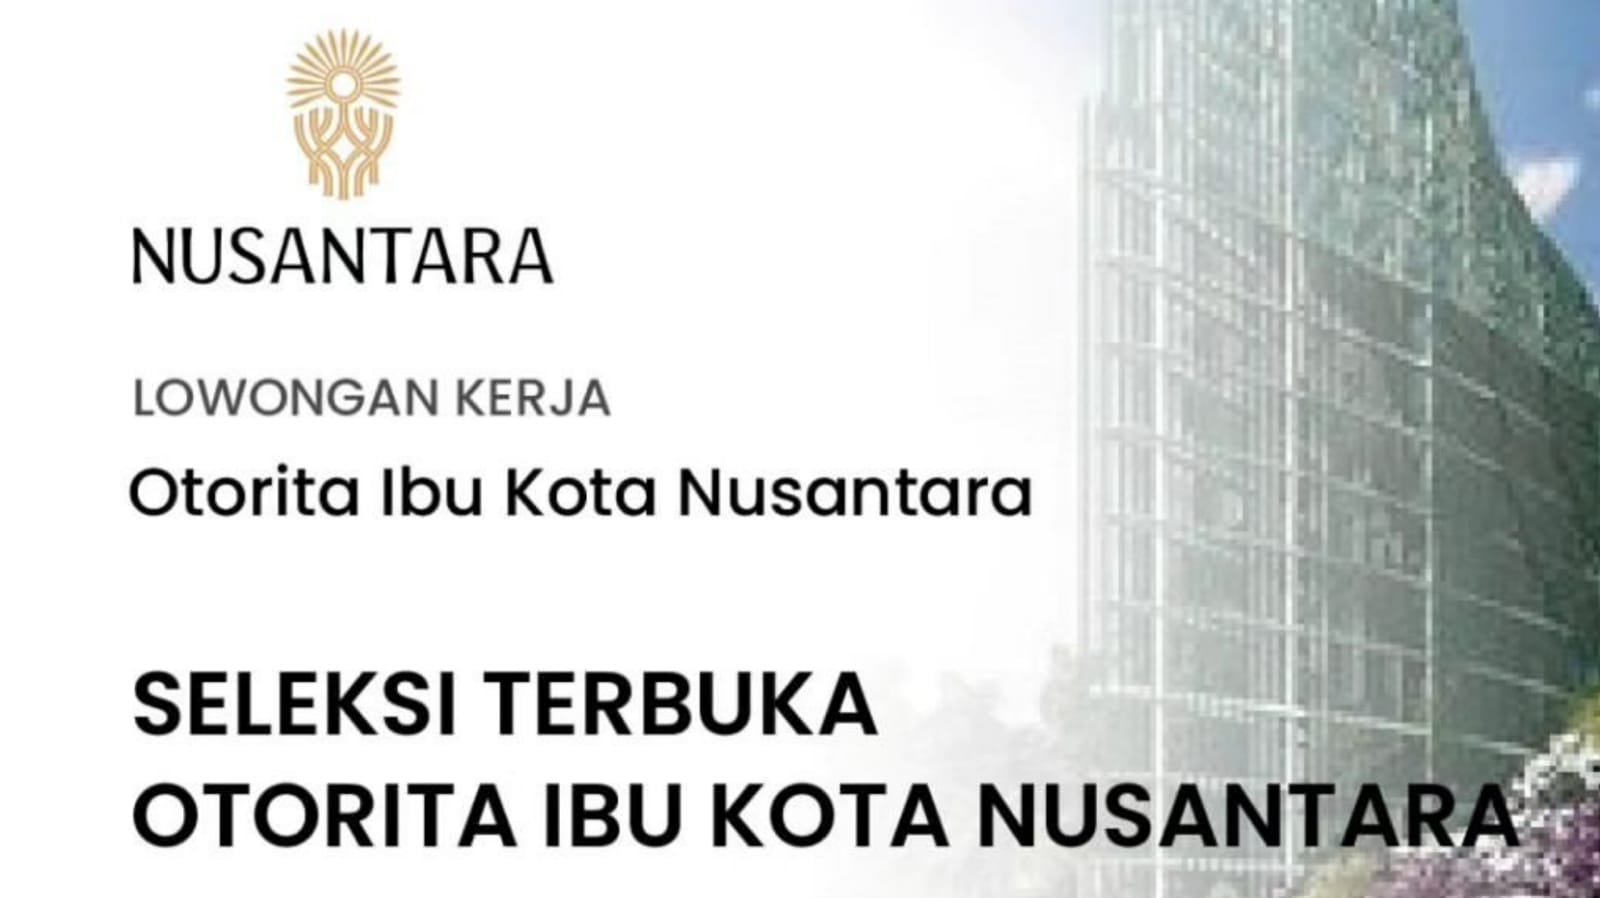 Lowongan Kerja Otorita Ibu Kota Nusantara (Nusantara Capital Authority) 